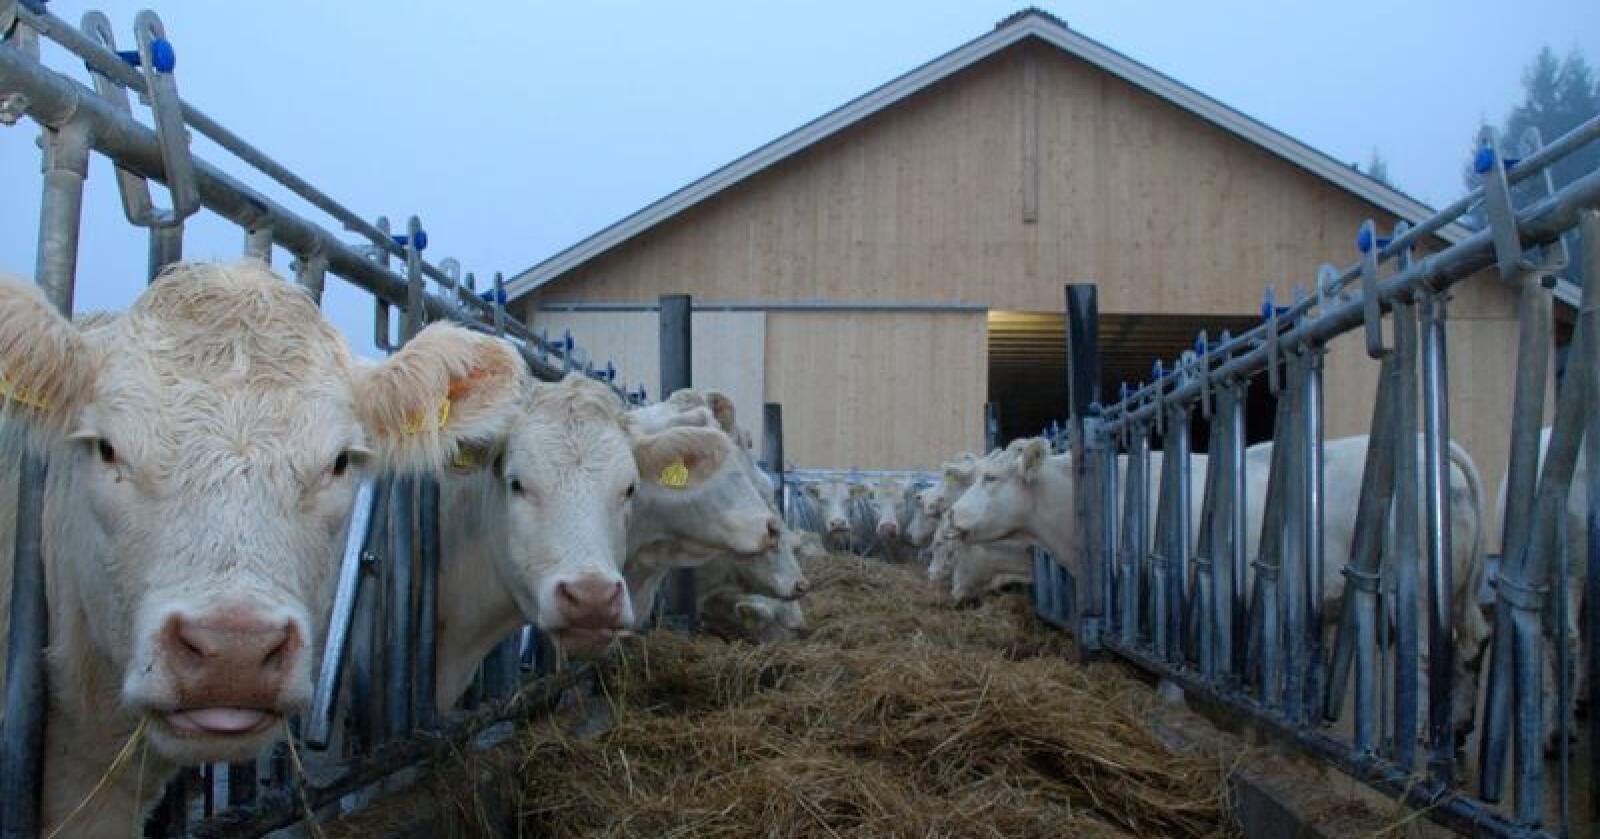 3280 husdyrprodusenter fikk nylig tilsendt et spørreskjema om dyrevelferd. Forskere vil vite mer om hvordan situasjonen oppleves fra bondens side. (Illustrasjonsfoto)